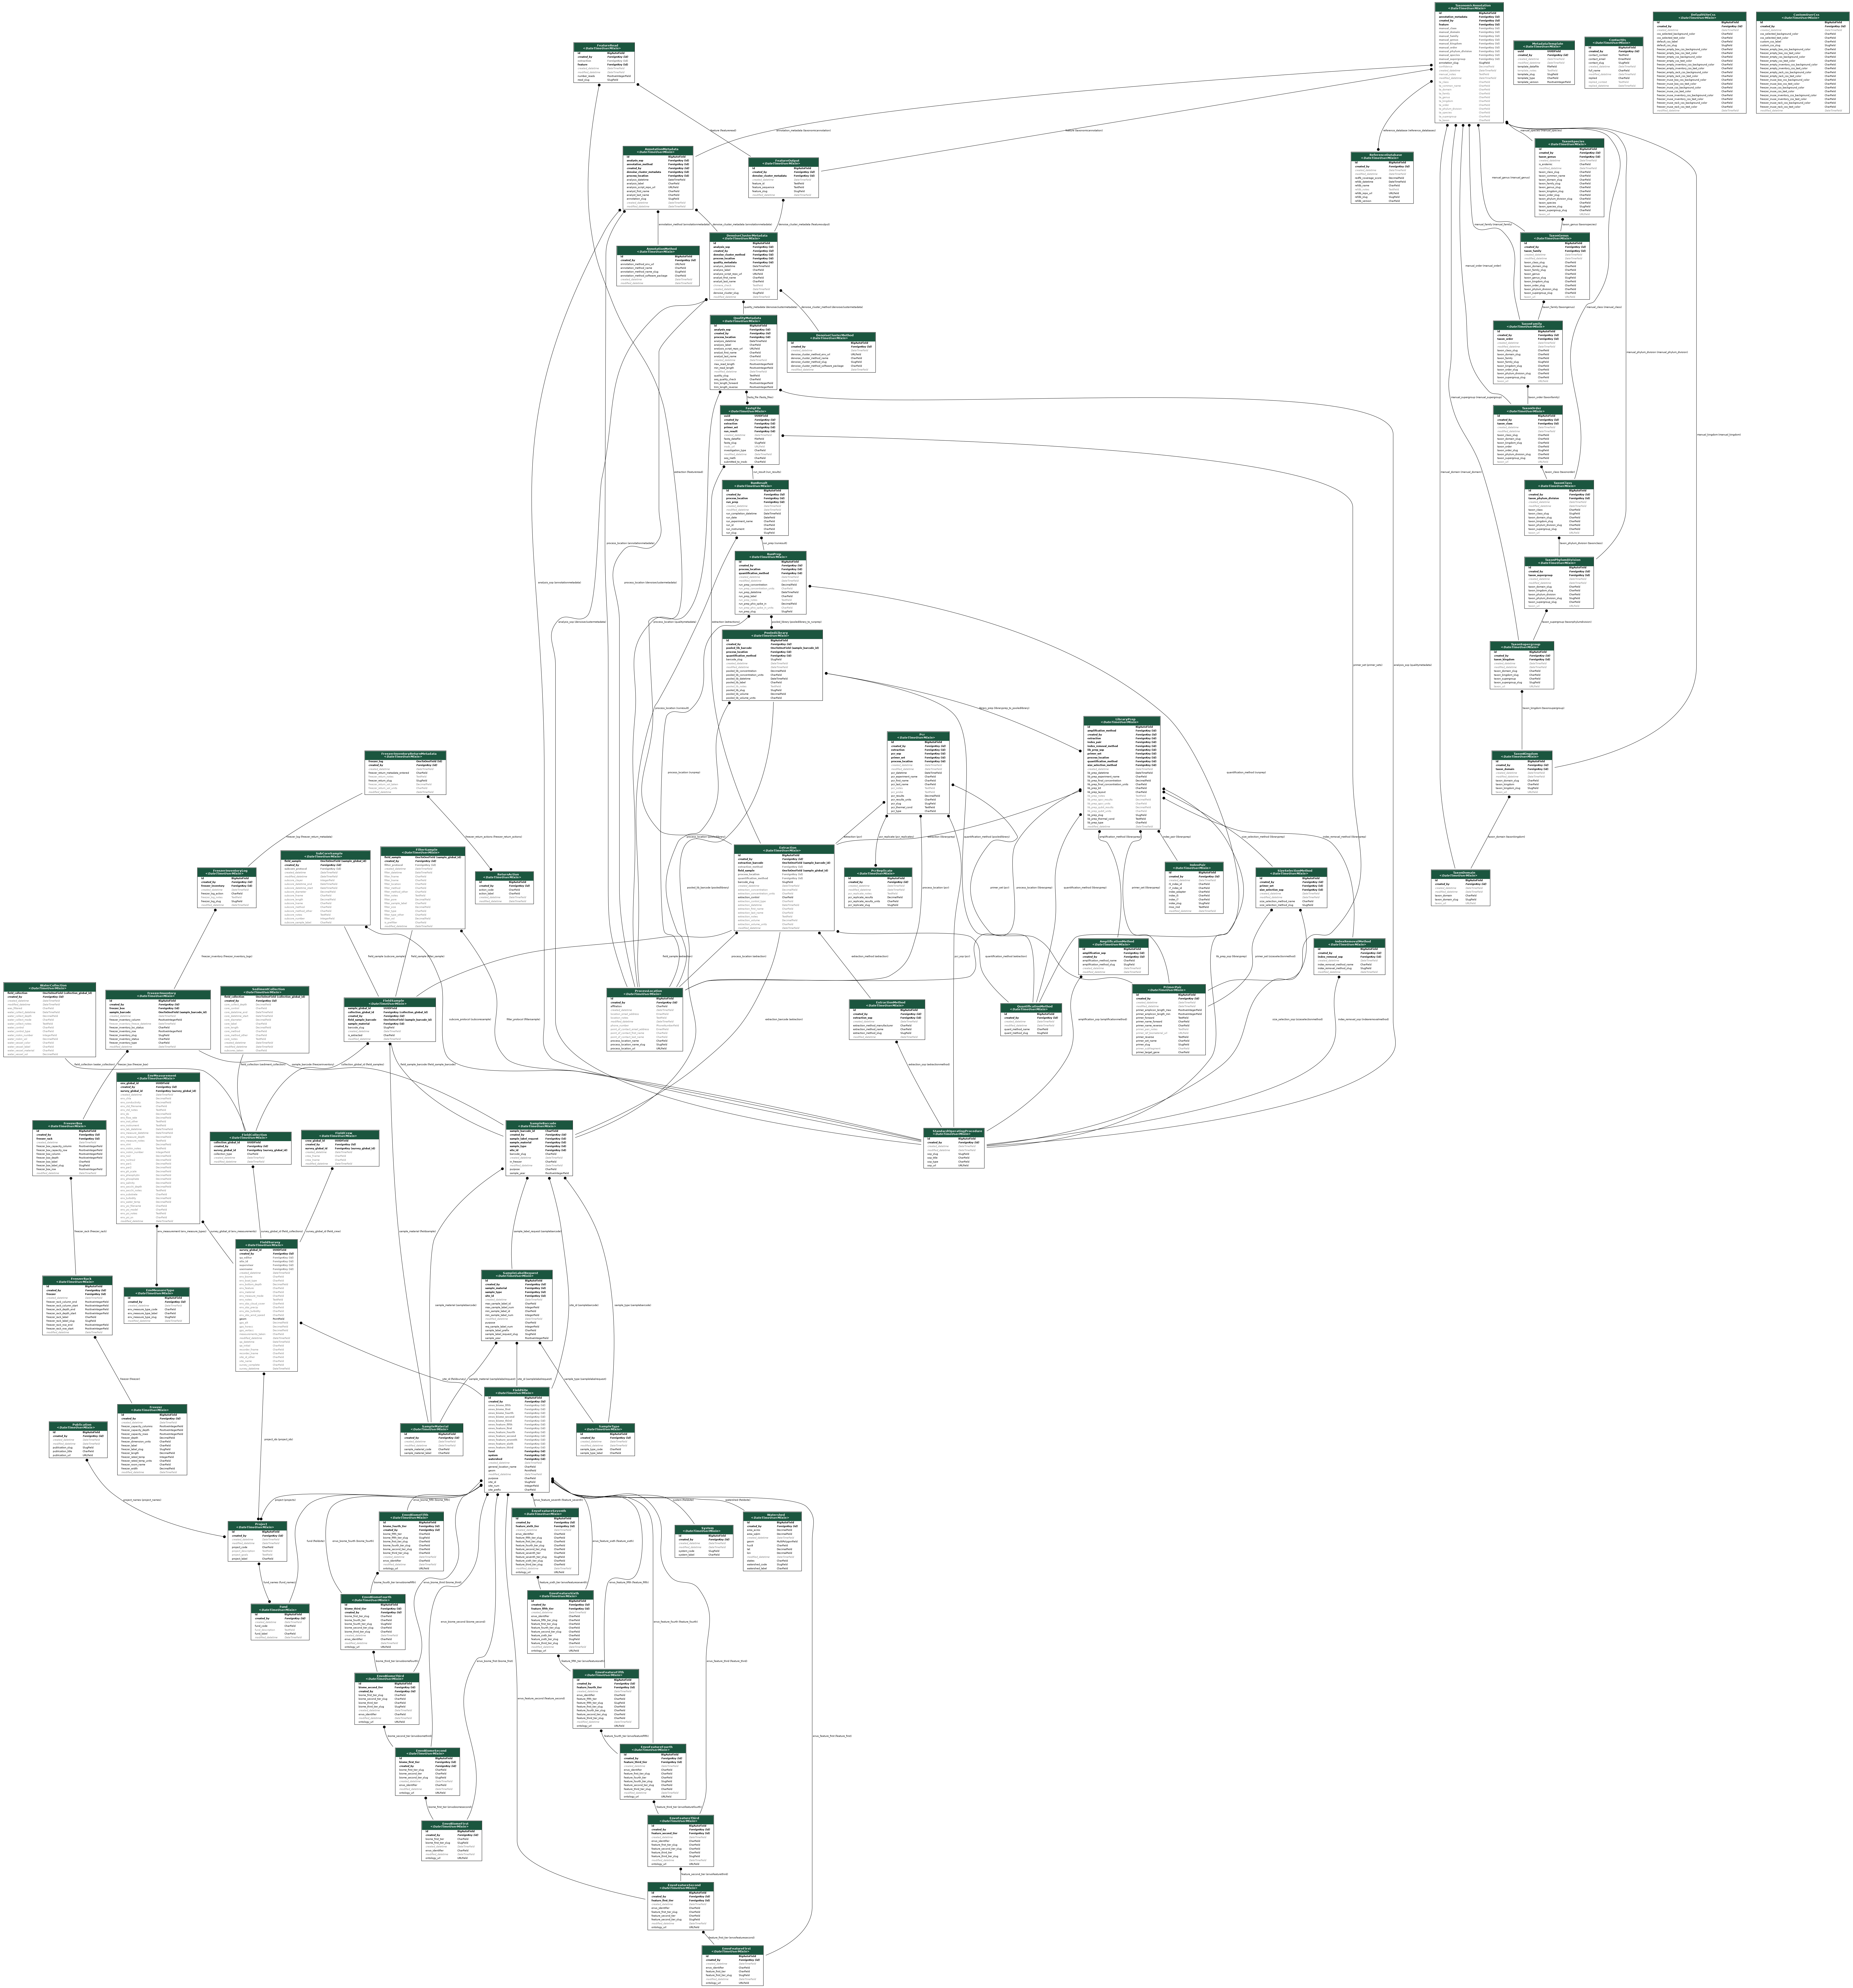 Full medna-metadata entity relationship diagram